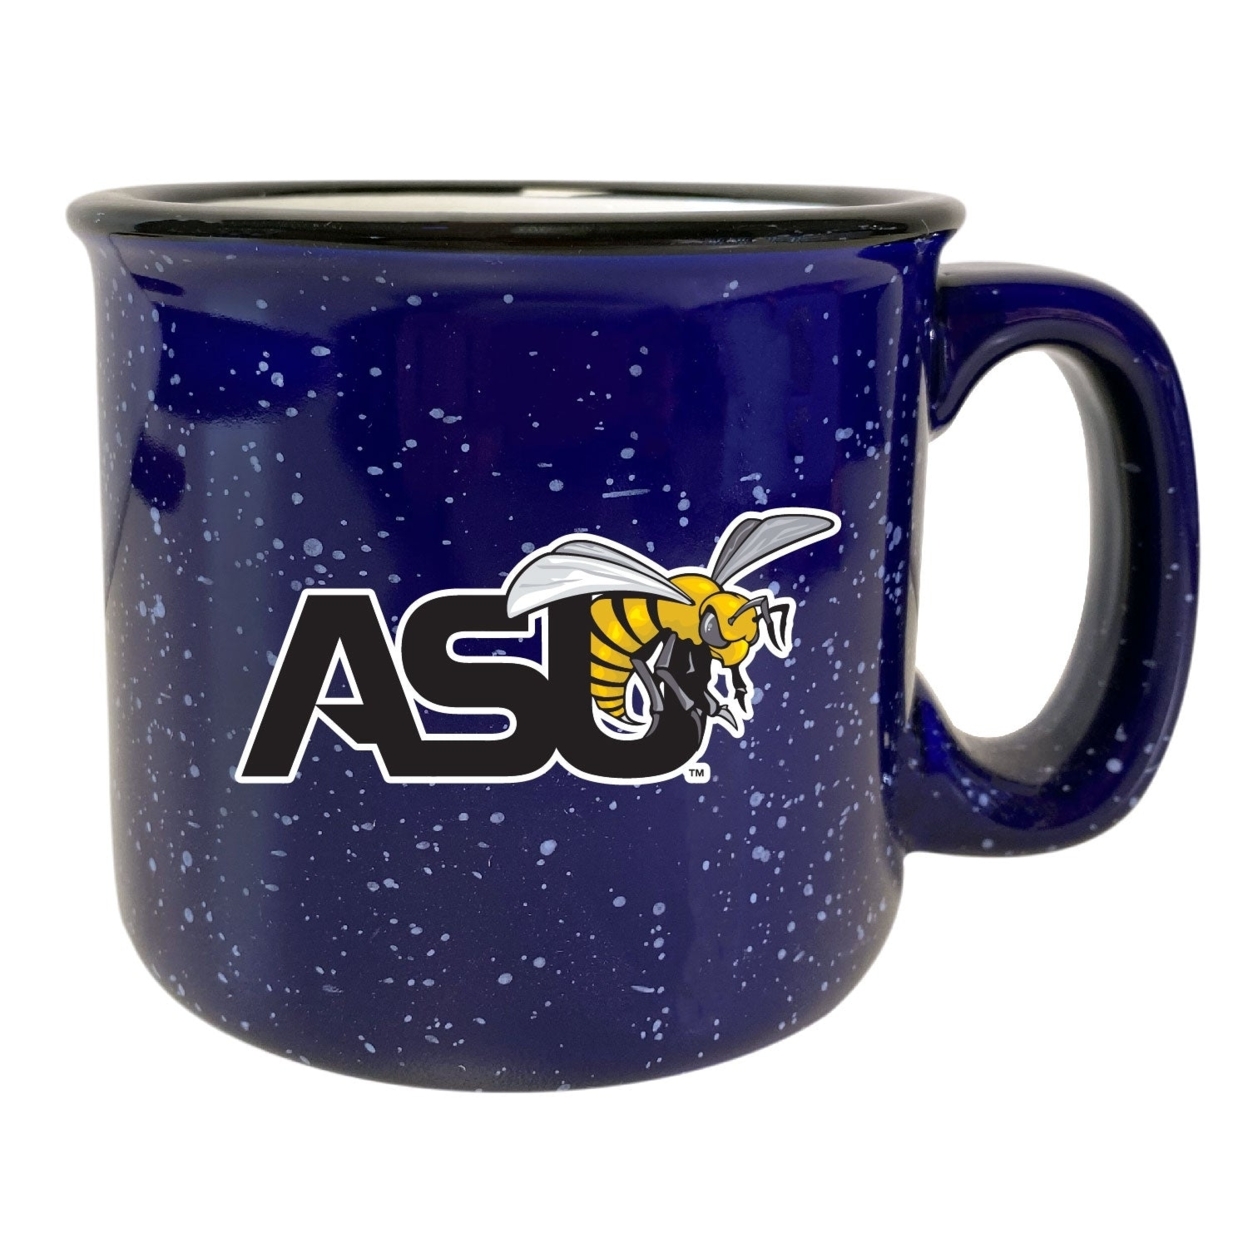 Alabama State University Speckled Ceramic Camper Coffee Mug - Choose Your Color - Navy